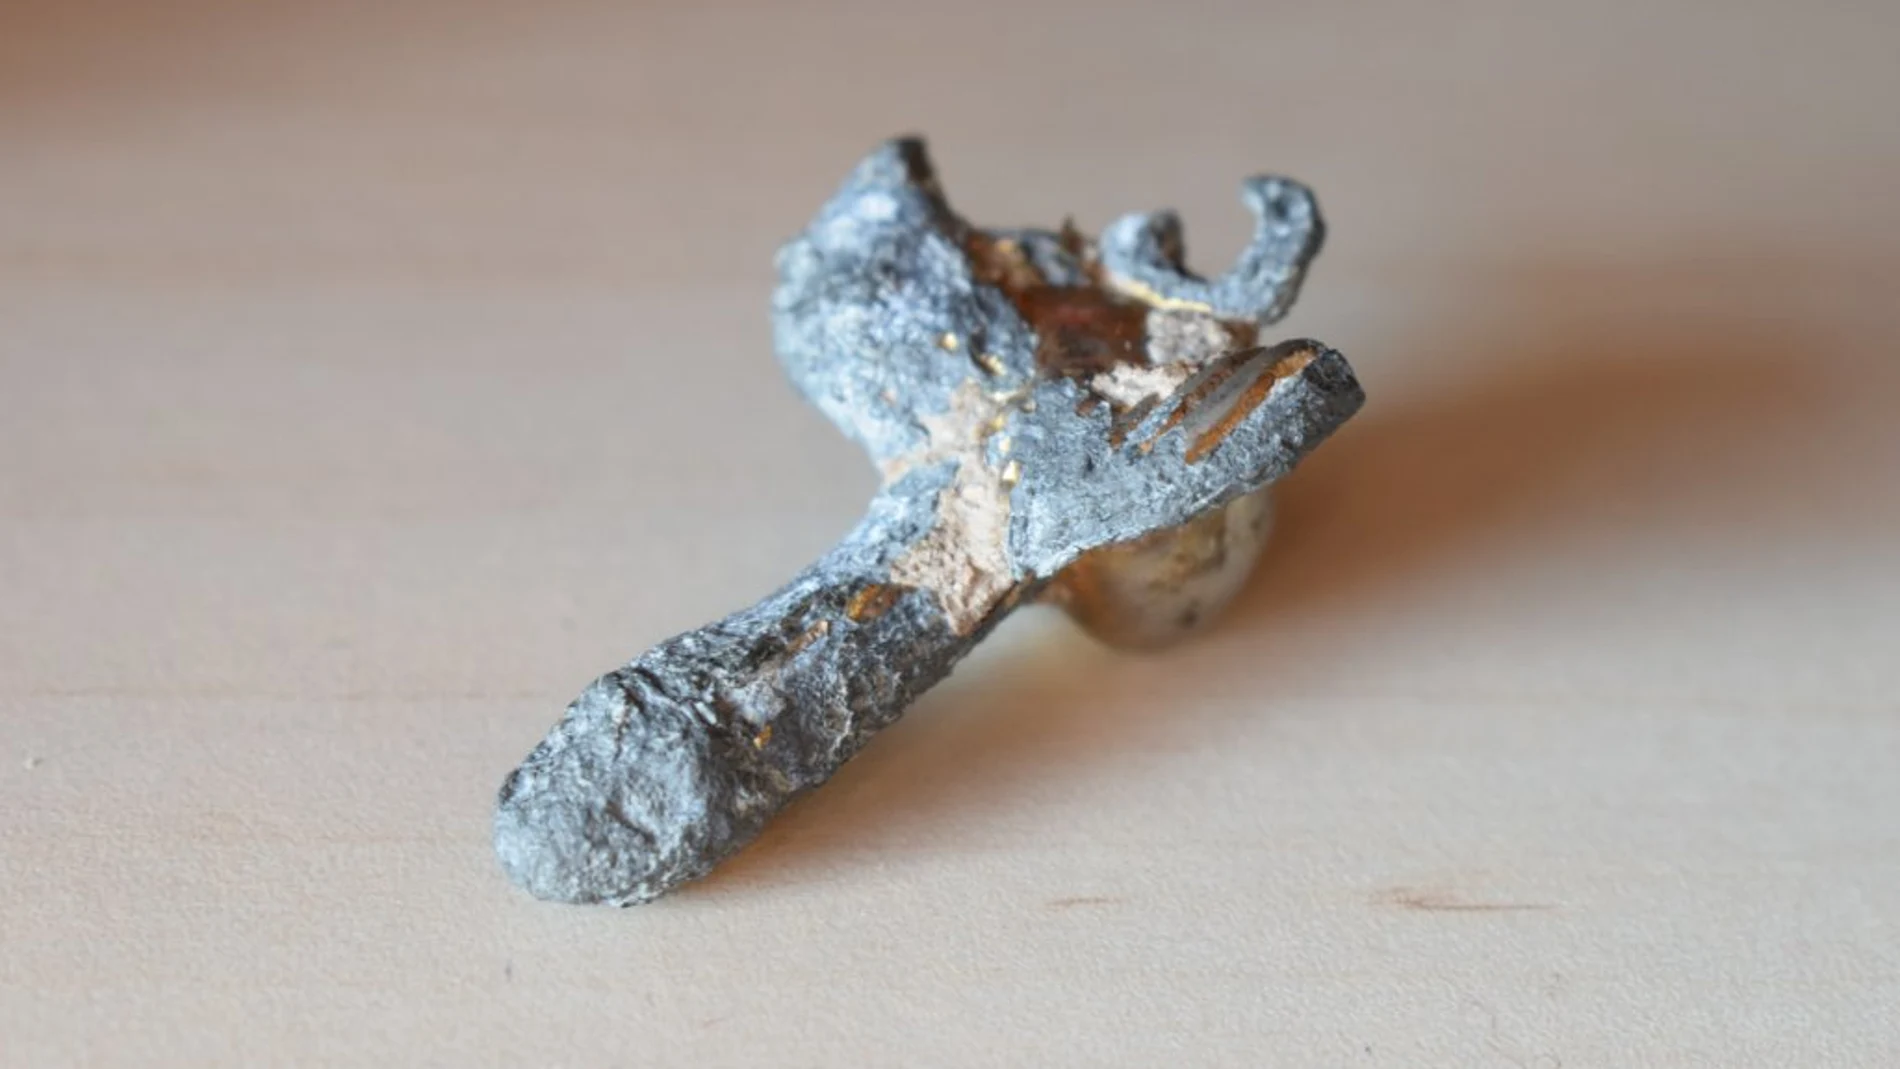 Hallan un amuleto romano con forma de pene alado en Murcia